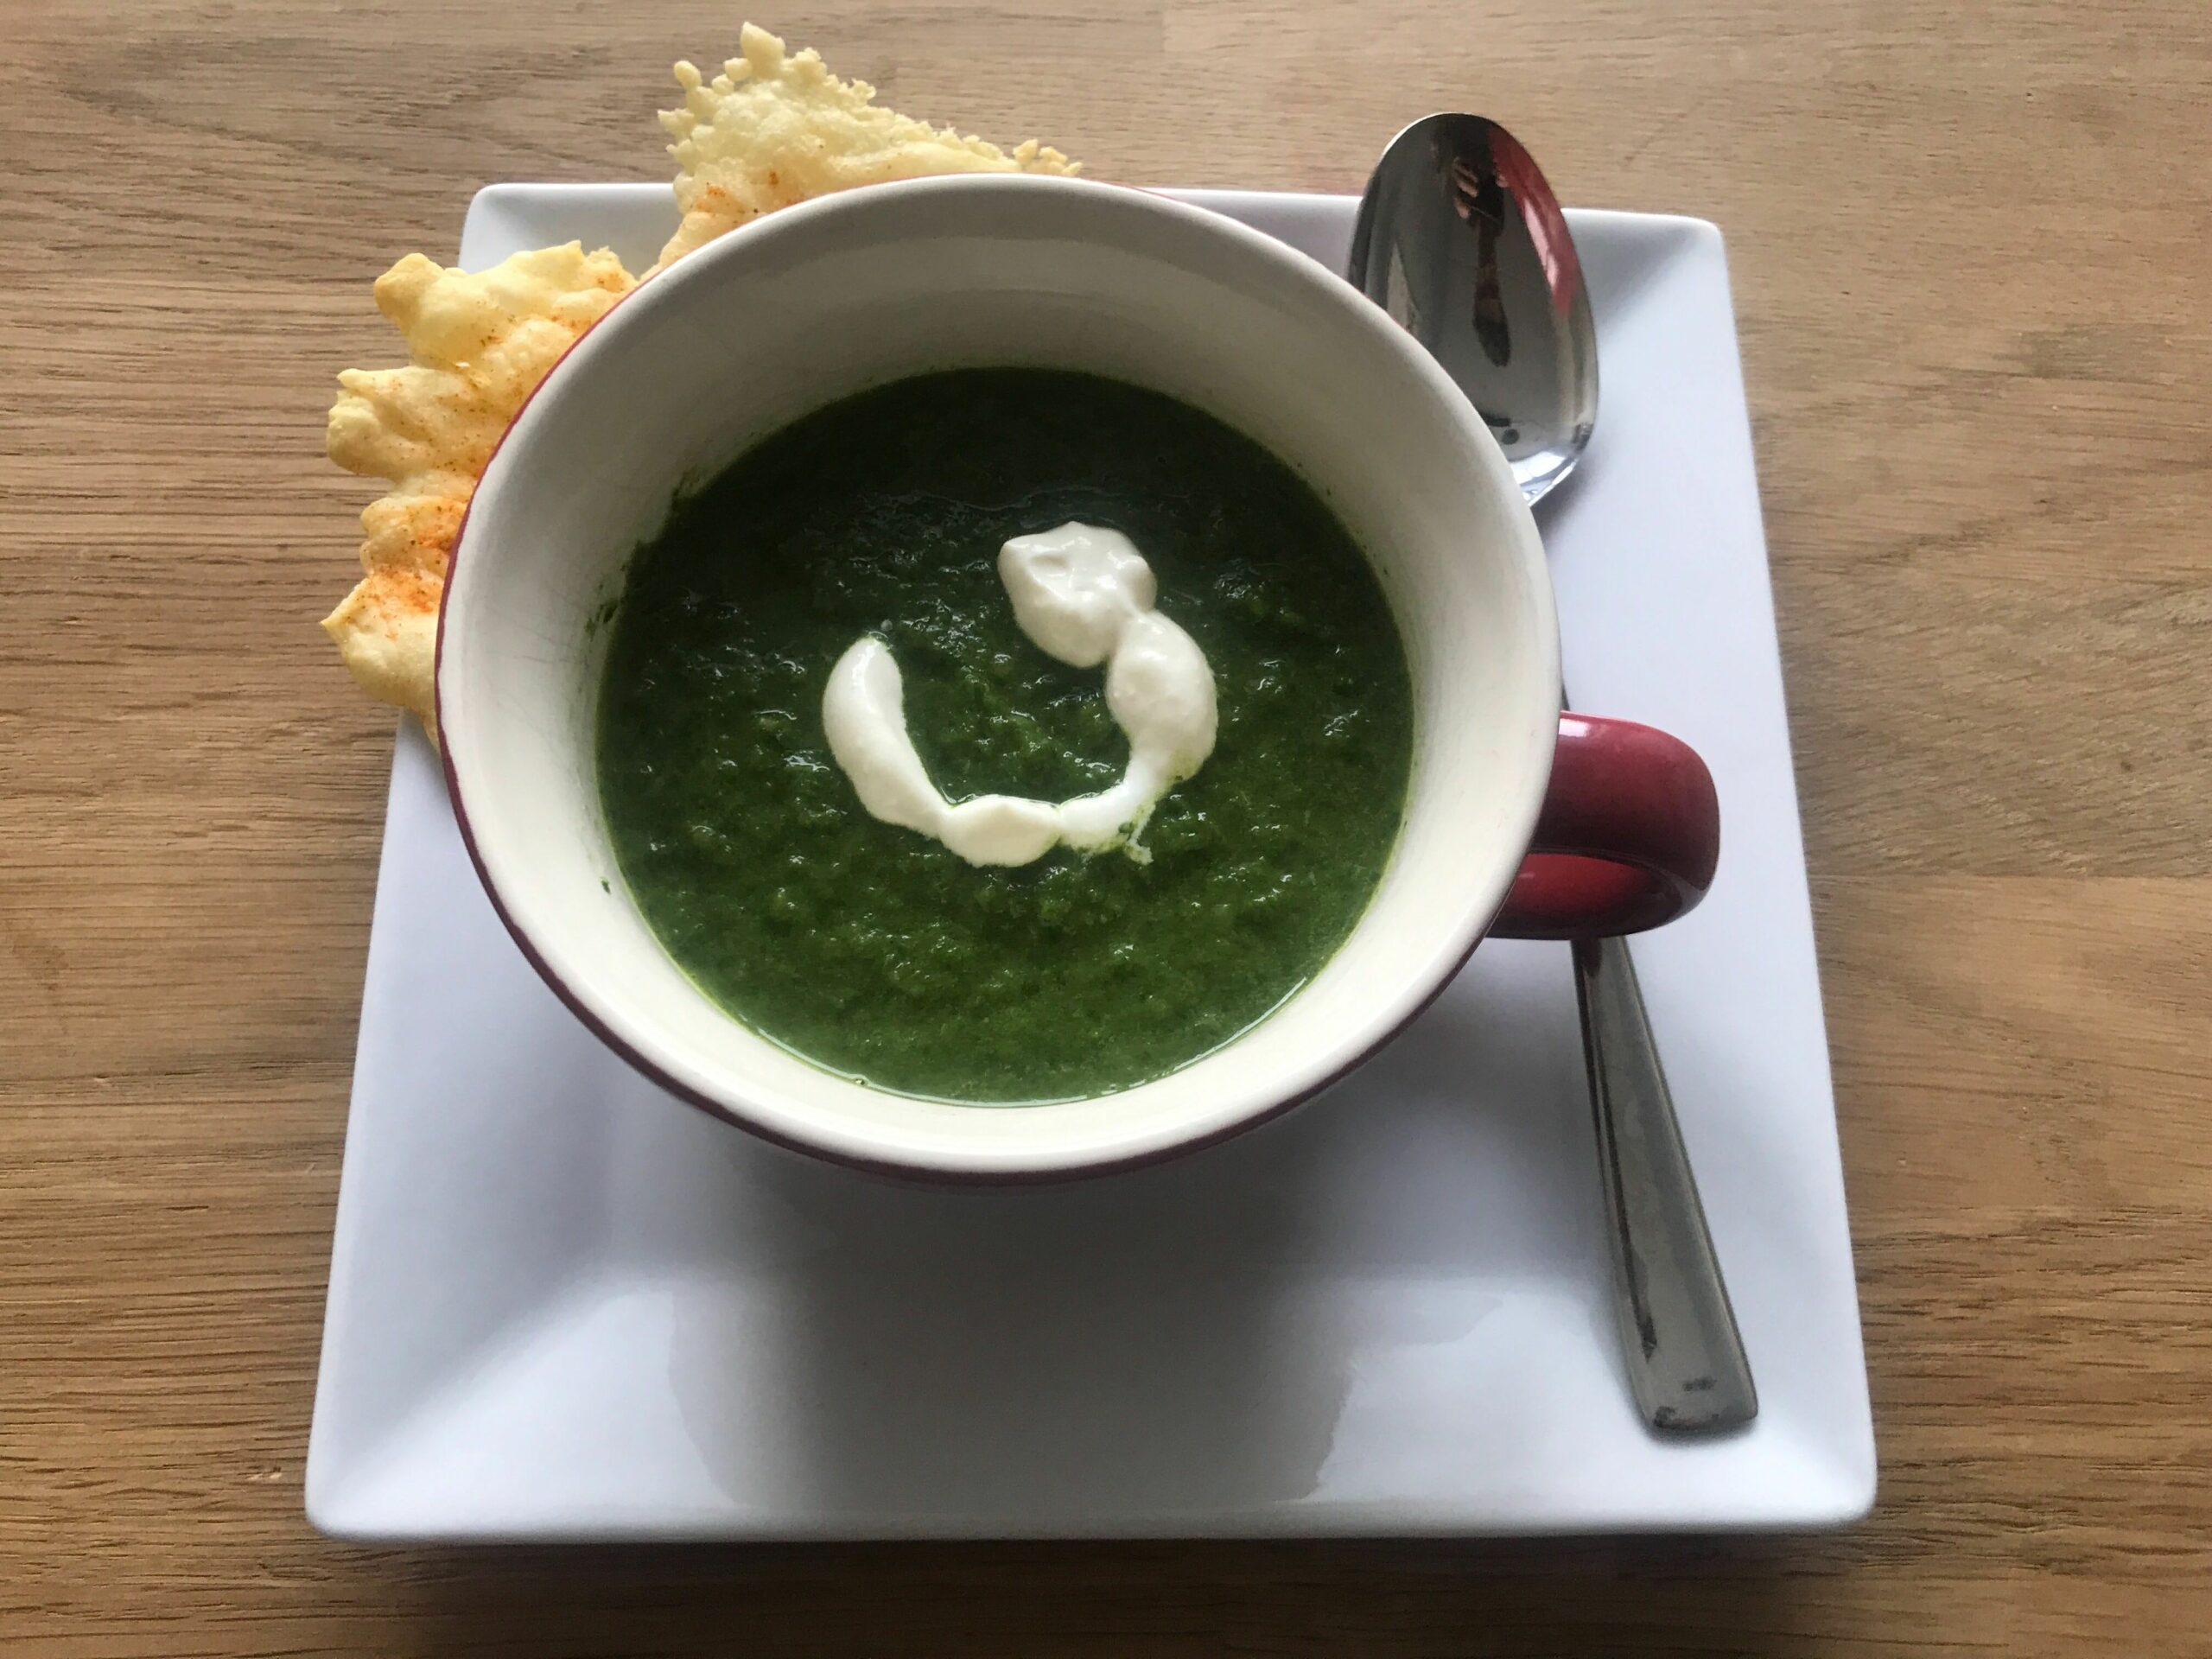 Recept: Spinazie soep